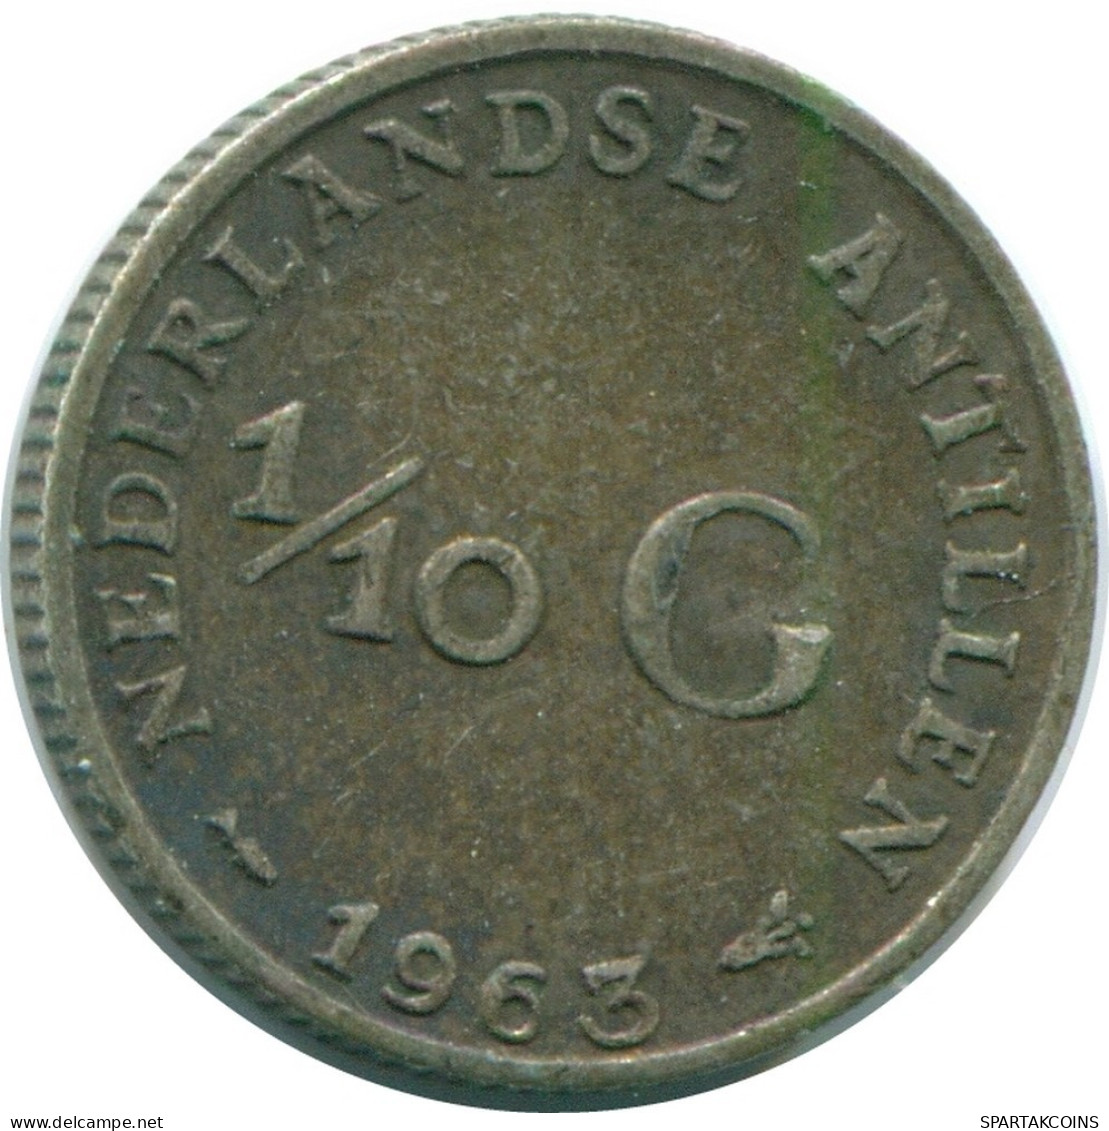 1/10 GULDEN 1963 NIEDERLÄNDISCHE ANTILLEN SILBER Koloniale Münze #NL12504.3.D.A - Antilles Néerlandaises